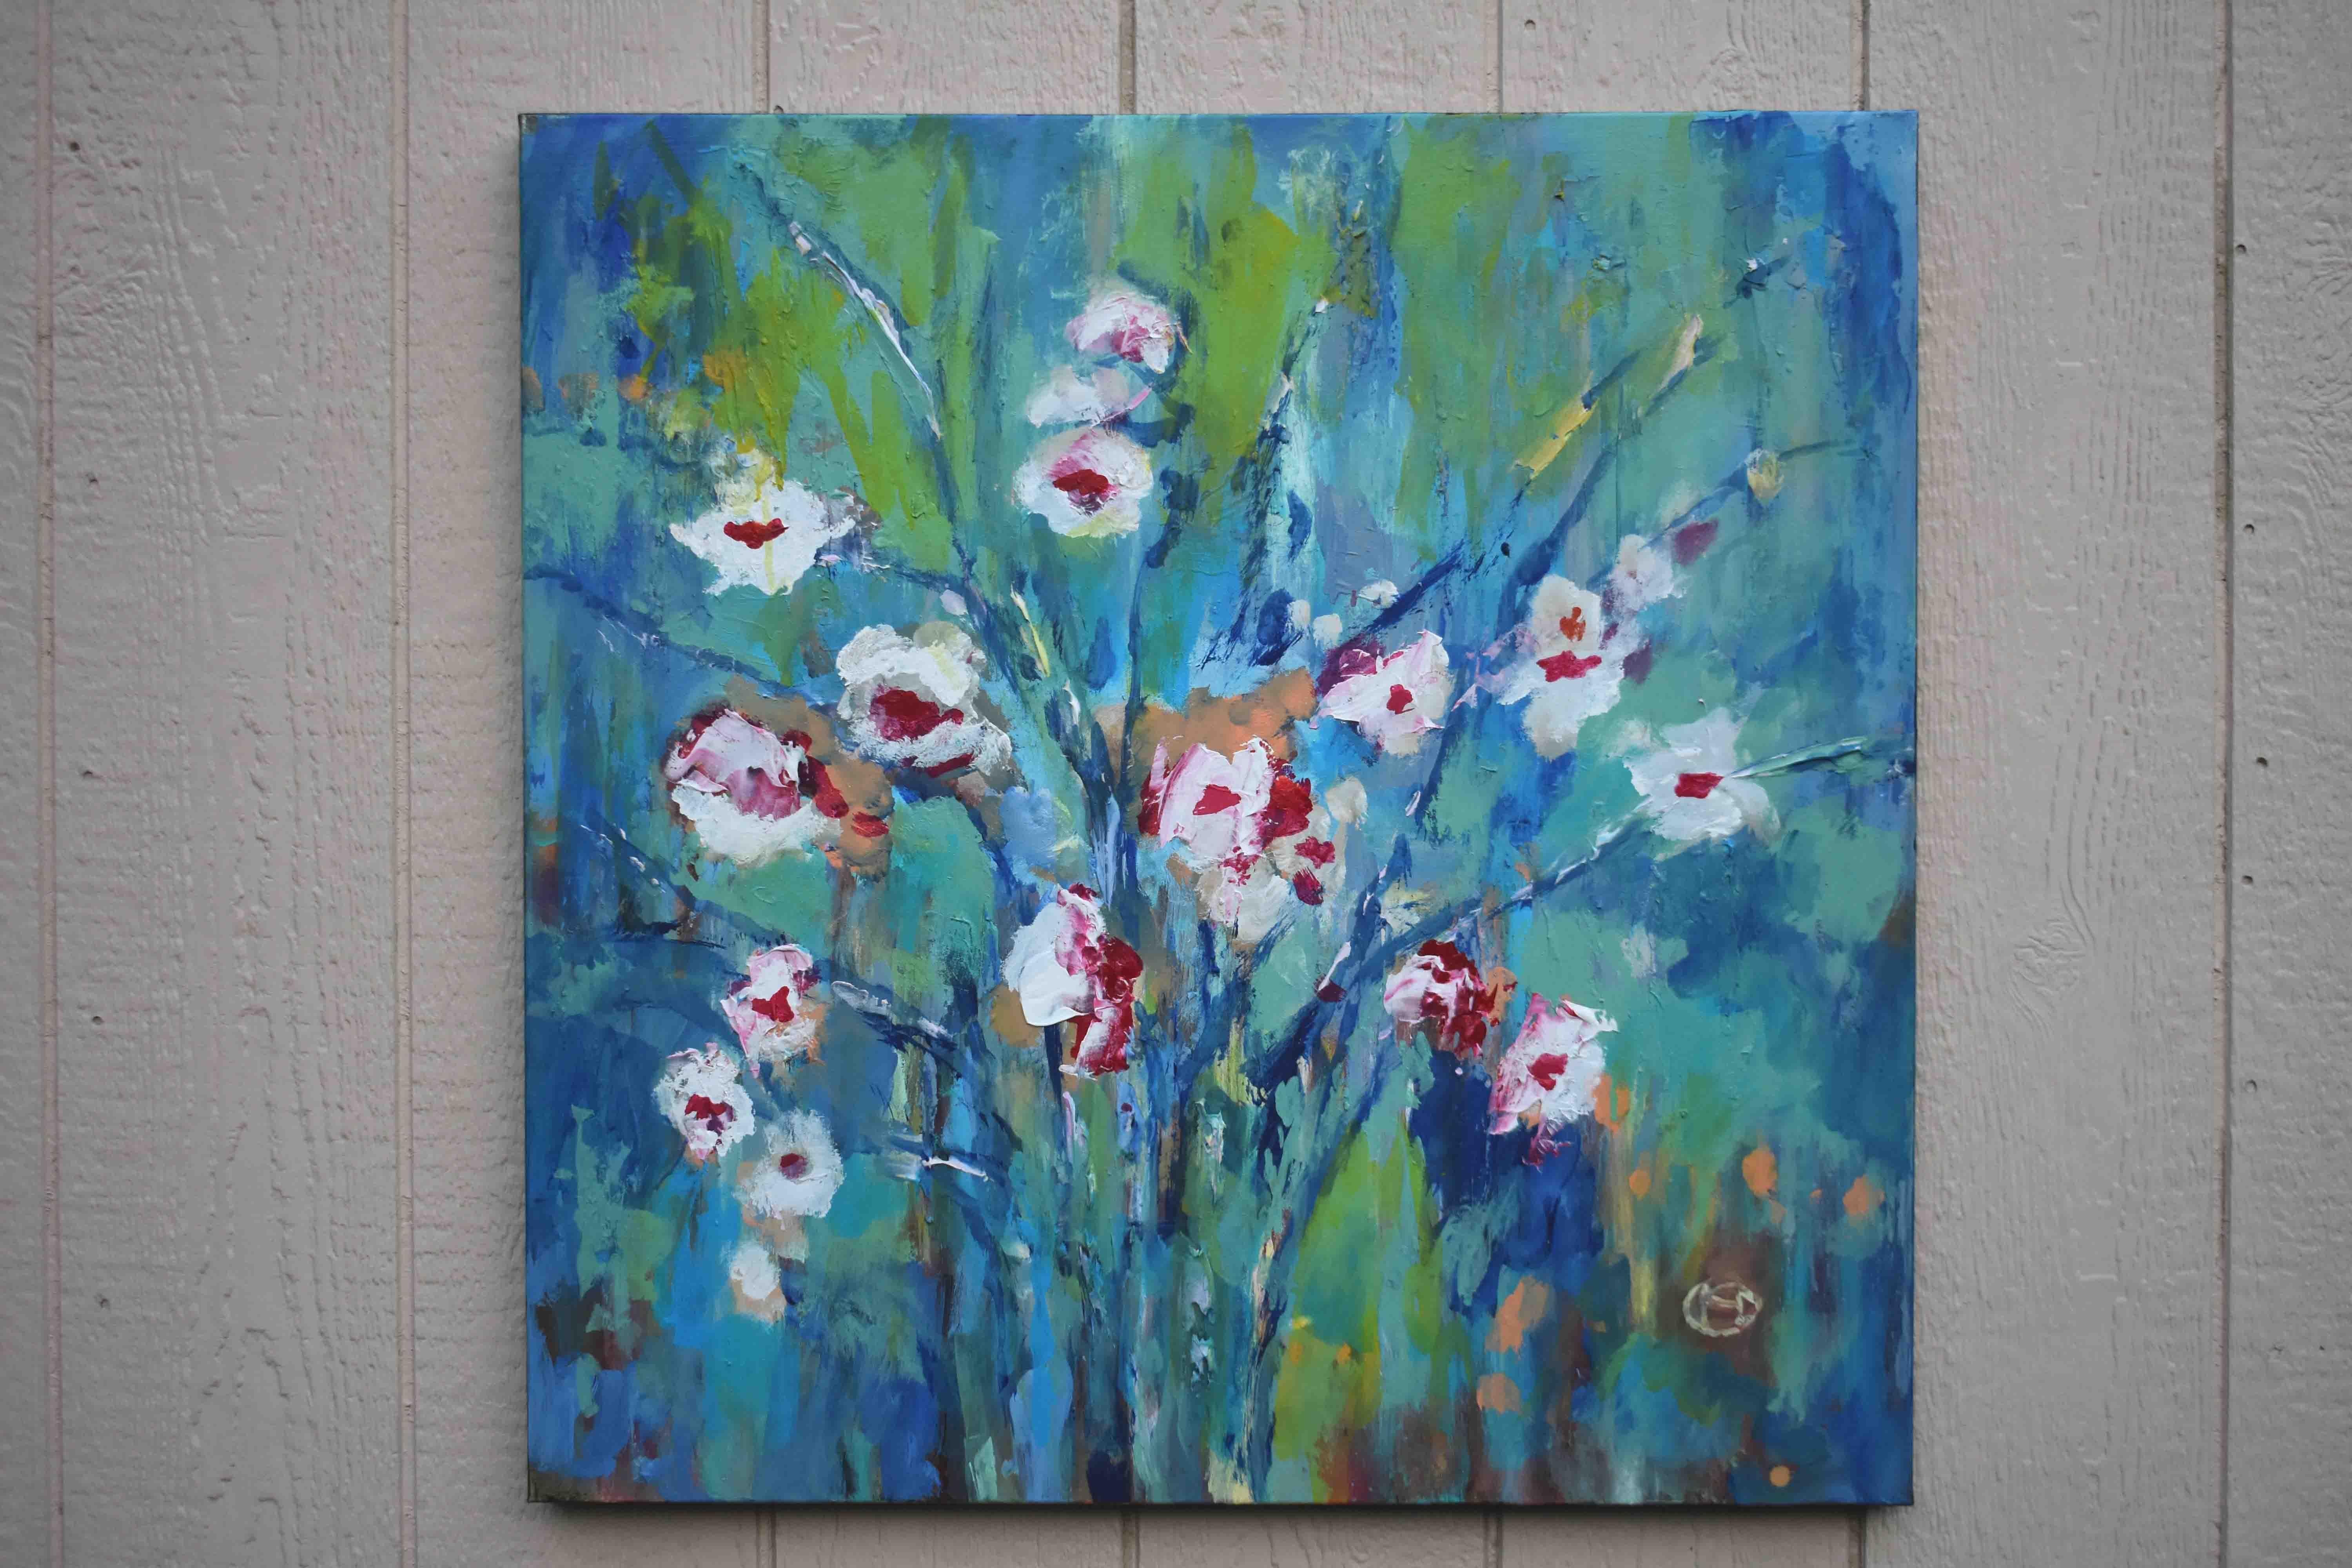 <p>Kommentare des Künstlers<br>Der Künstler Kip Decker zeigt ein expressionistisches Stillleben mit einem fröhlichen Blumenstrauß. Frische Blüten breiten sich in einem zierlichen Schwung aus, eingefangen im sanften Sonnenlicht. 